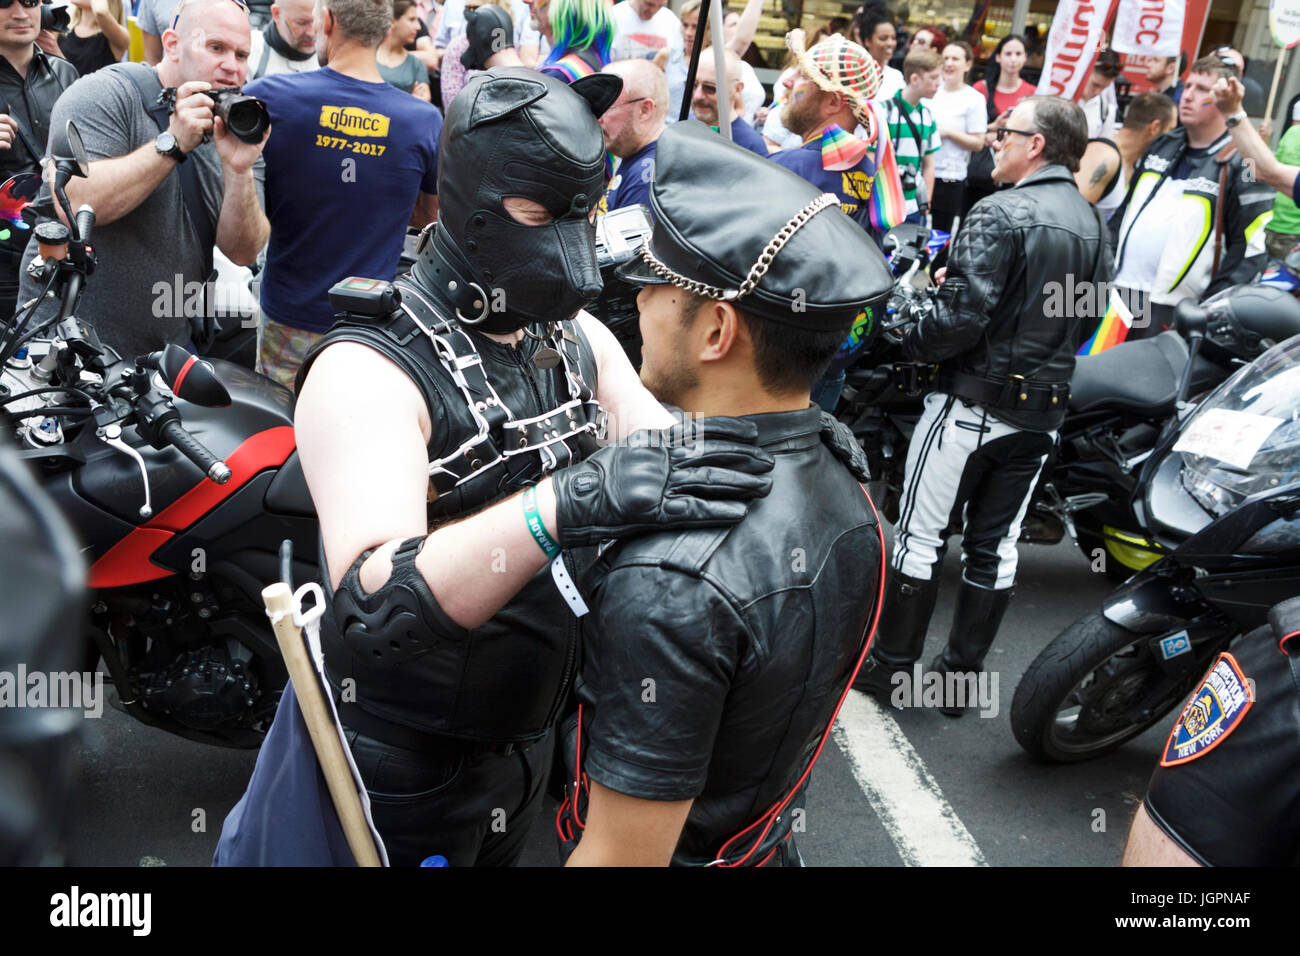 Ein Soho Street Scene in London. Homosexuelle Männer in Leder genießen die Soho Street Party Atmosphäre, nach Gay Pride, die jährliche Pride London Parade für die LGBT. Stockfoto